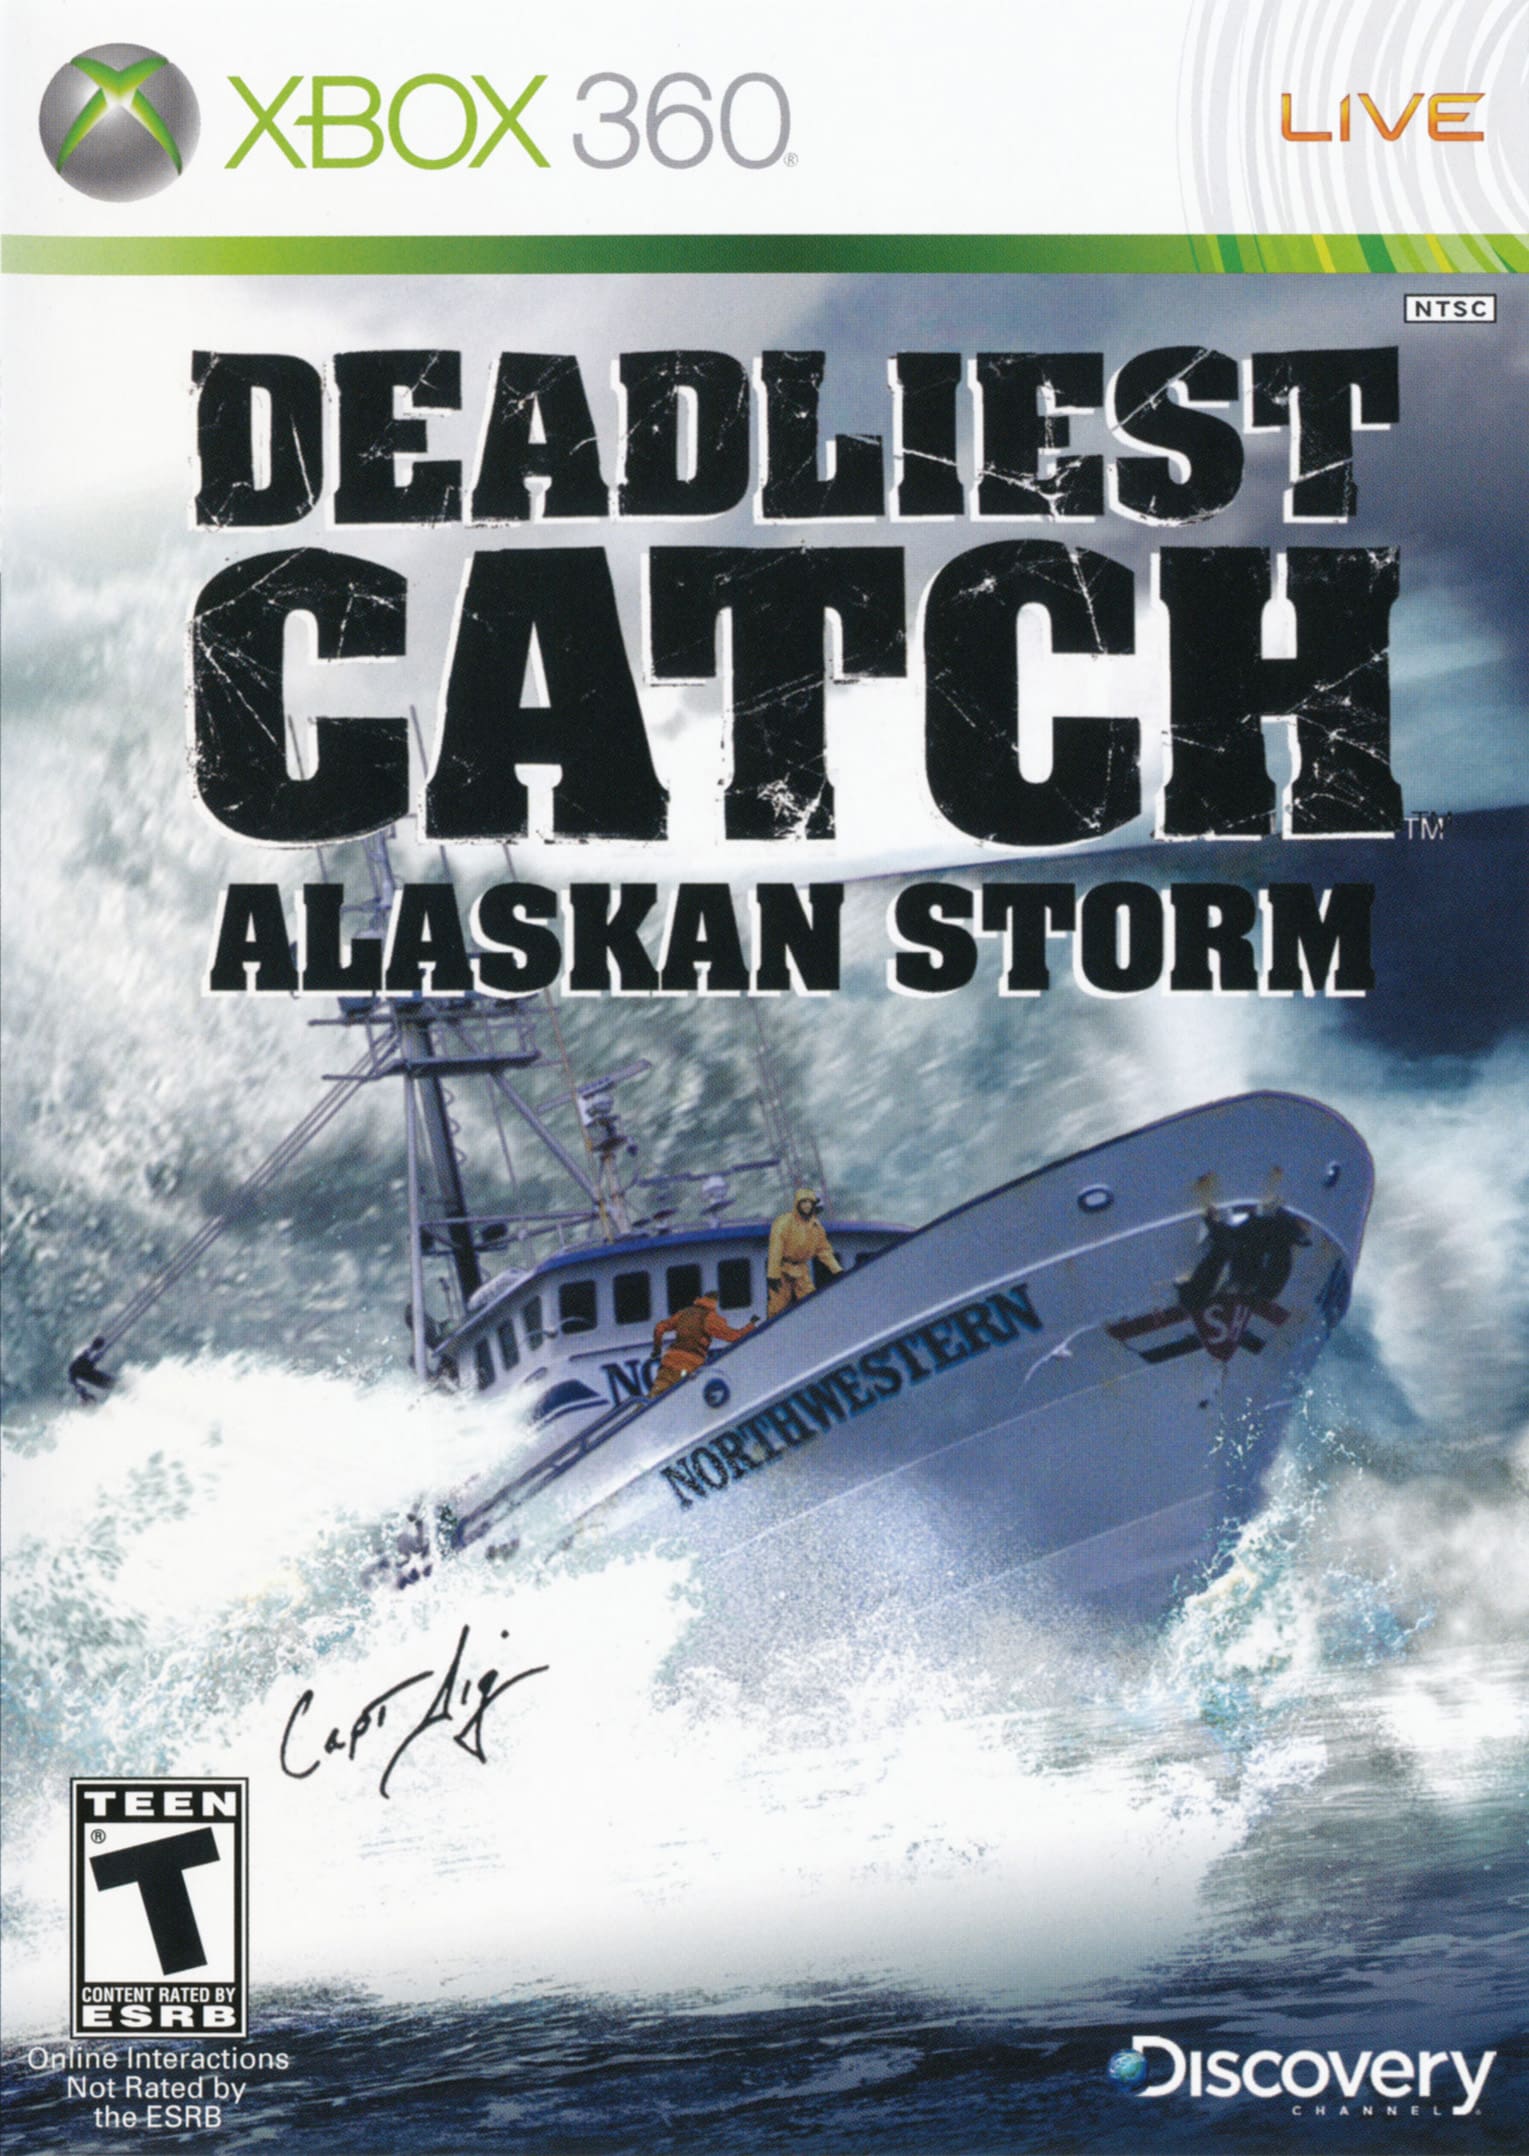 Alerta de Nostalgia: Deadliest Catch: Alaskan Storm - Microsoft Xbox 360 (2008) Anos 2000, Jogos, Nostalgia, Retro Gaming, Reviews